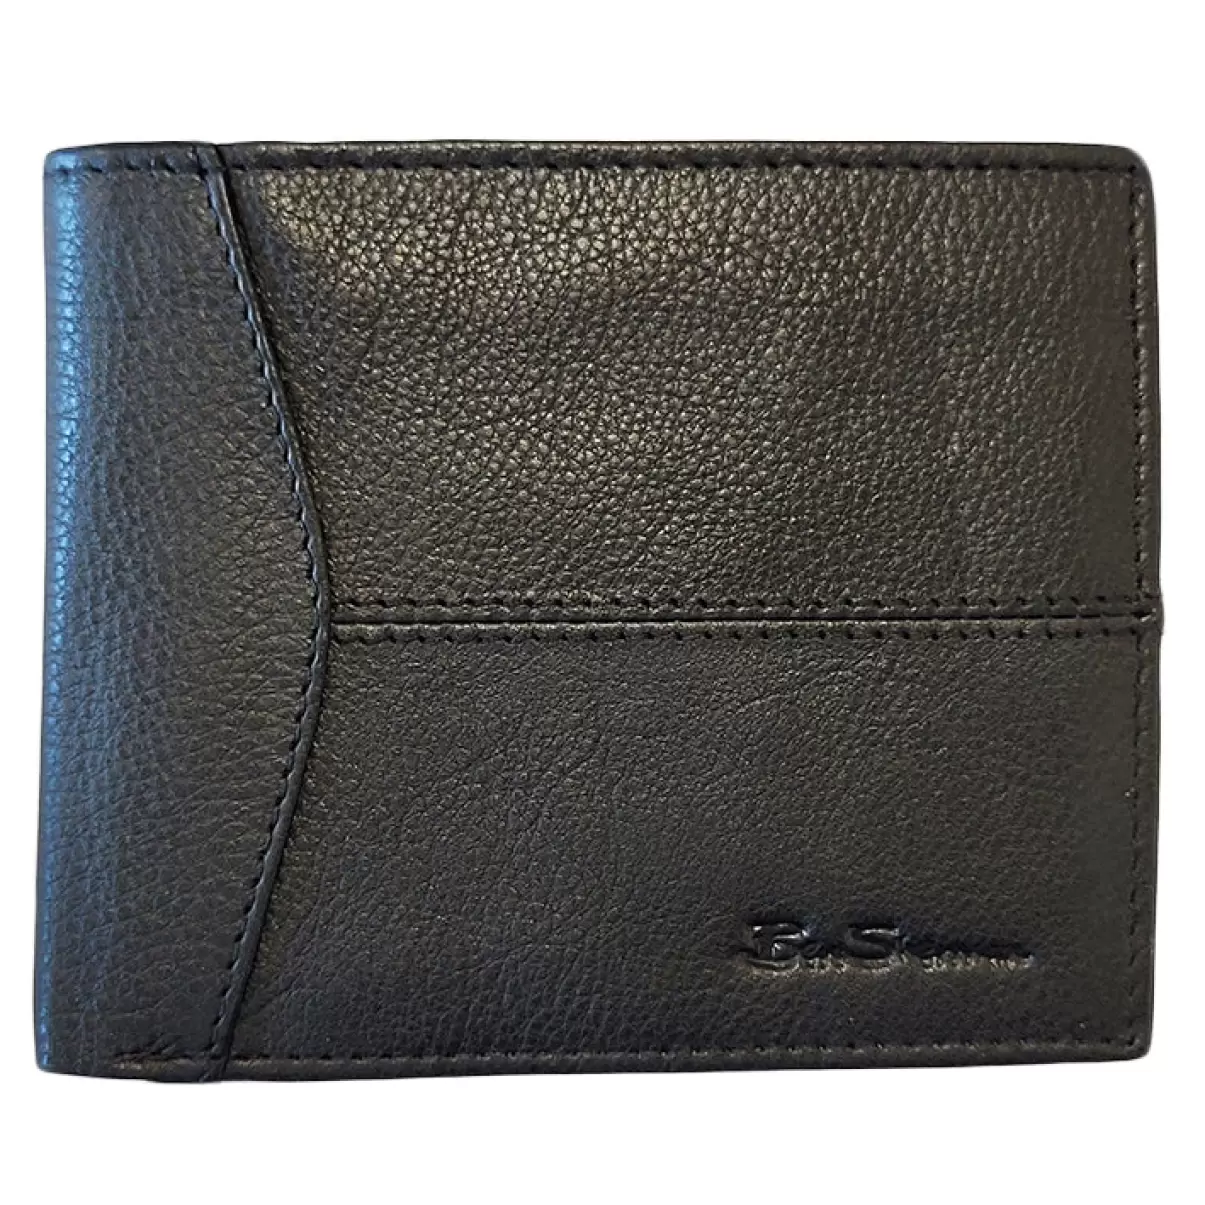 Black Wallets & Card Holders Guaranteed Men Ben Sherman Cooke Bill Fold Leather Wallet - Black - 2